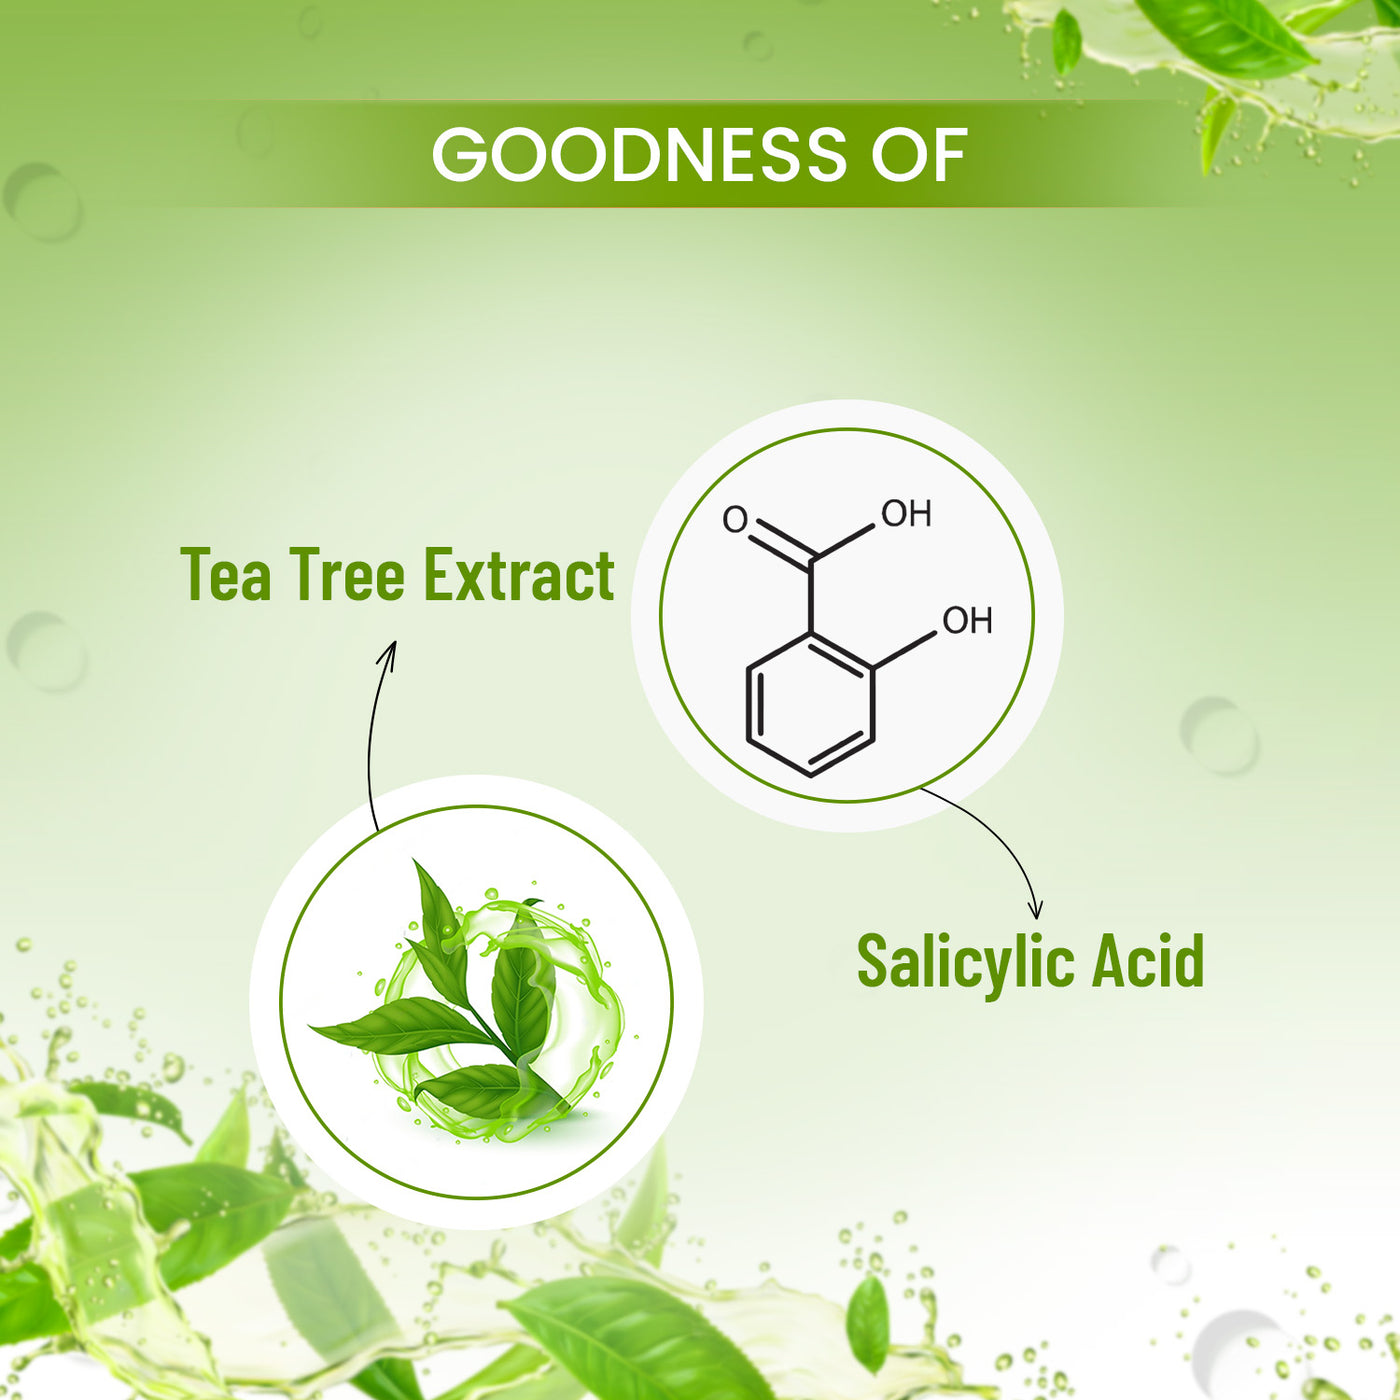 Tea tree & Salicylic Acid Sheet Mask